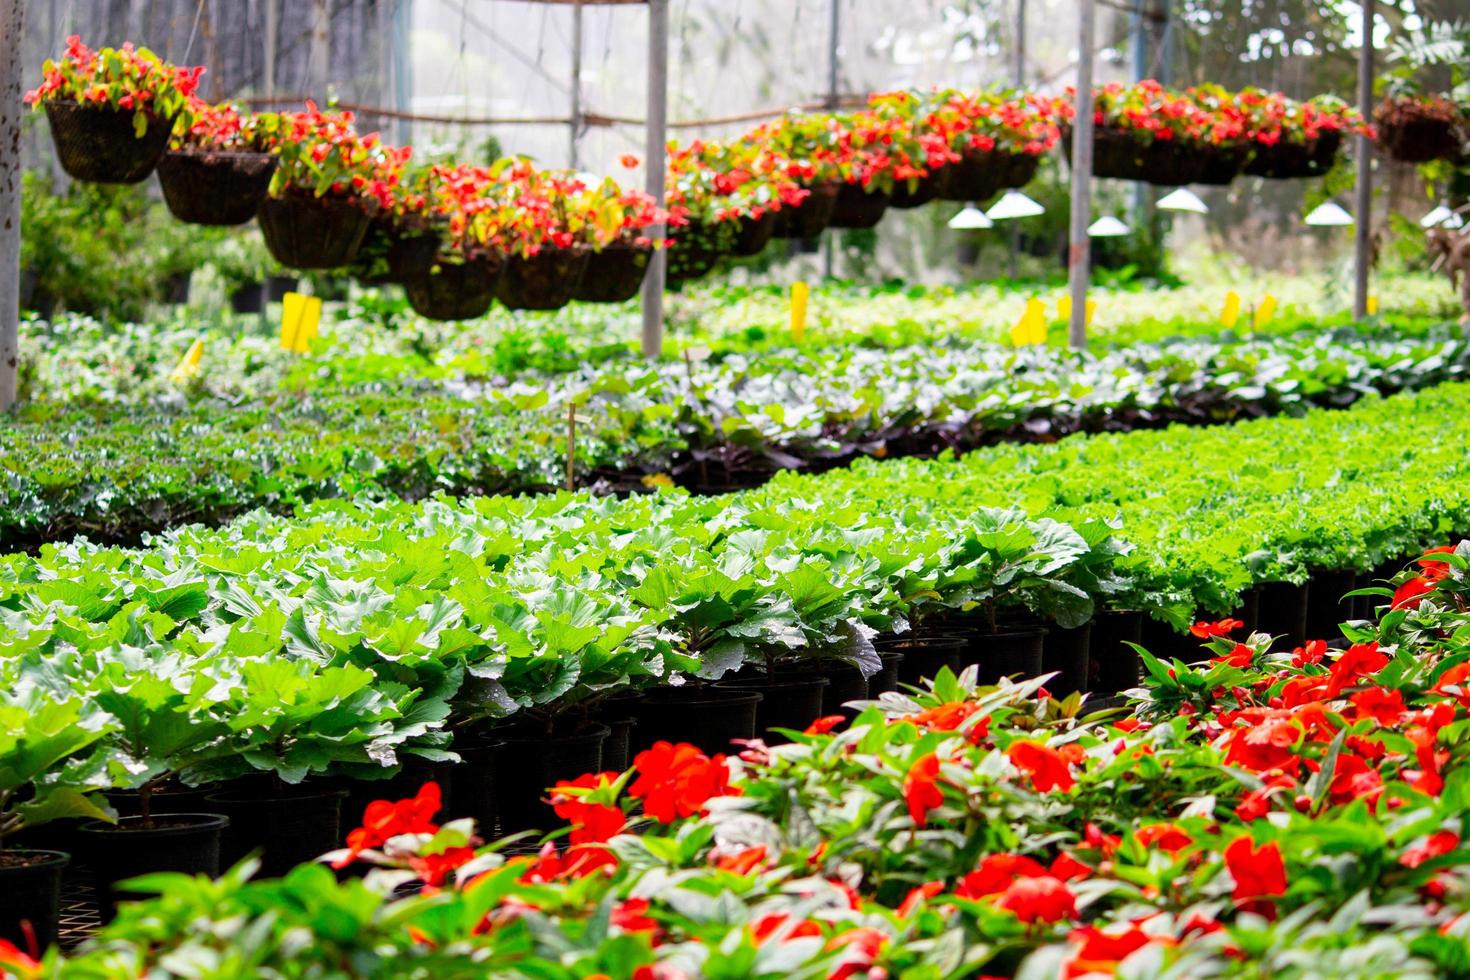 corte largo dar a entender Mercado dentro de un amplio invernadero para plantar flores para vender plantas y  flores en primavera. 2611616 Foto de stock en Vecteezy